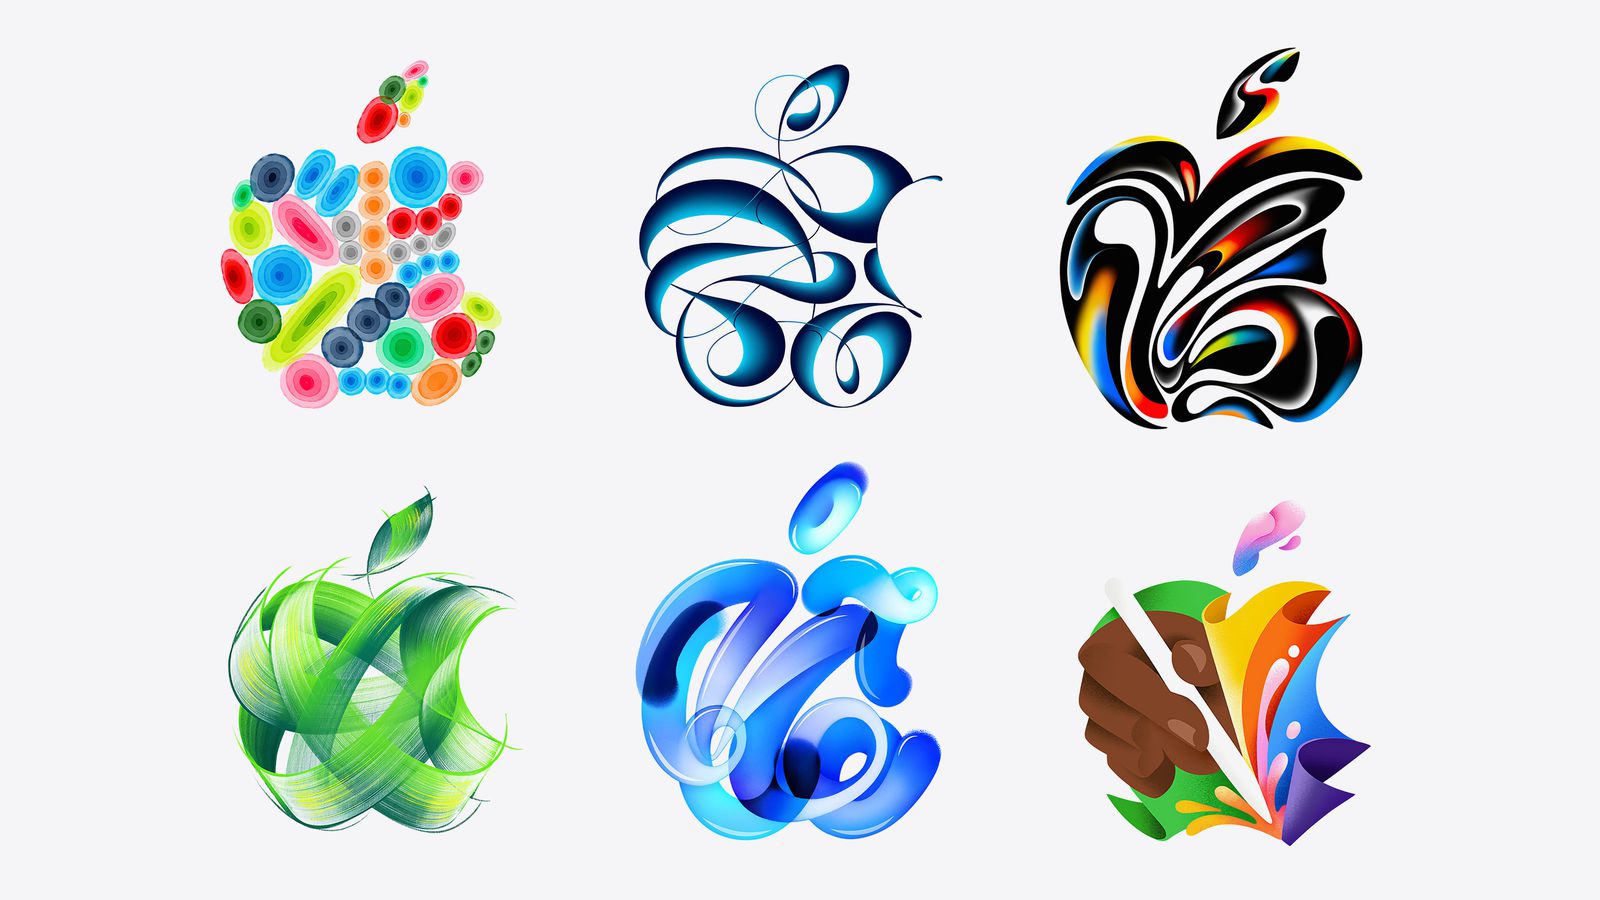 De iPhoneIslam.com, seis diseños abstractos en colores brillantes y formas fluidas, incluida una colección de esferas, formas en forma de cintas y motivos de hojas influenciados por noticias marginales.